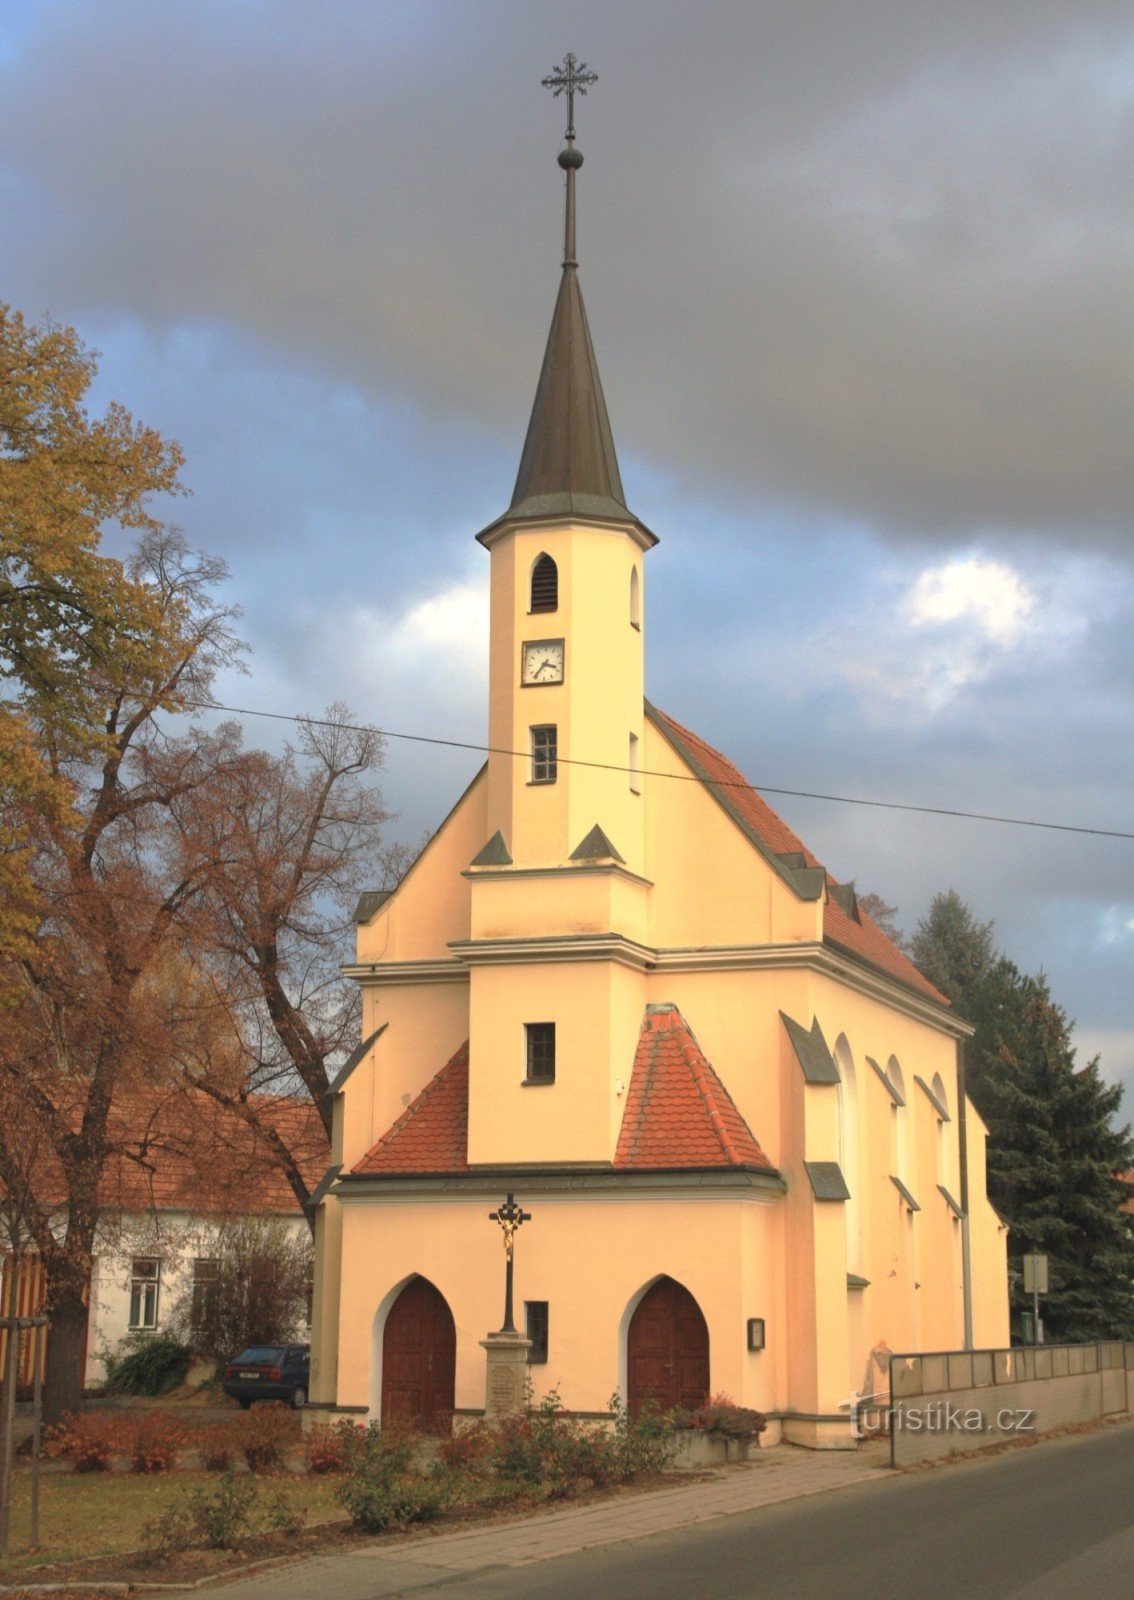 Ostopovice - Nhà nguyện St. John the Baptist